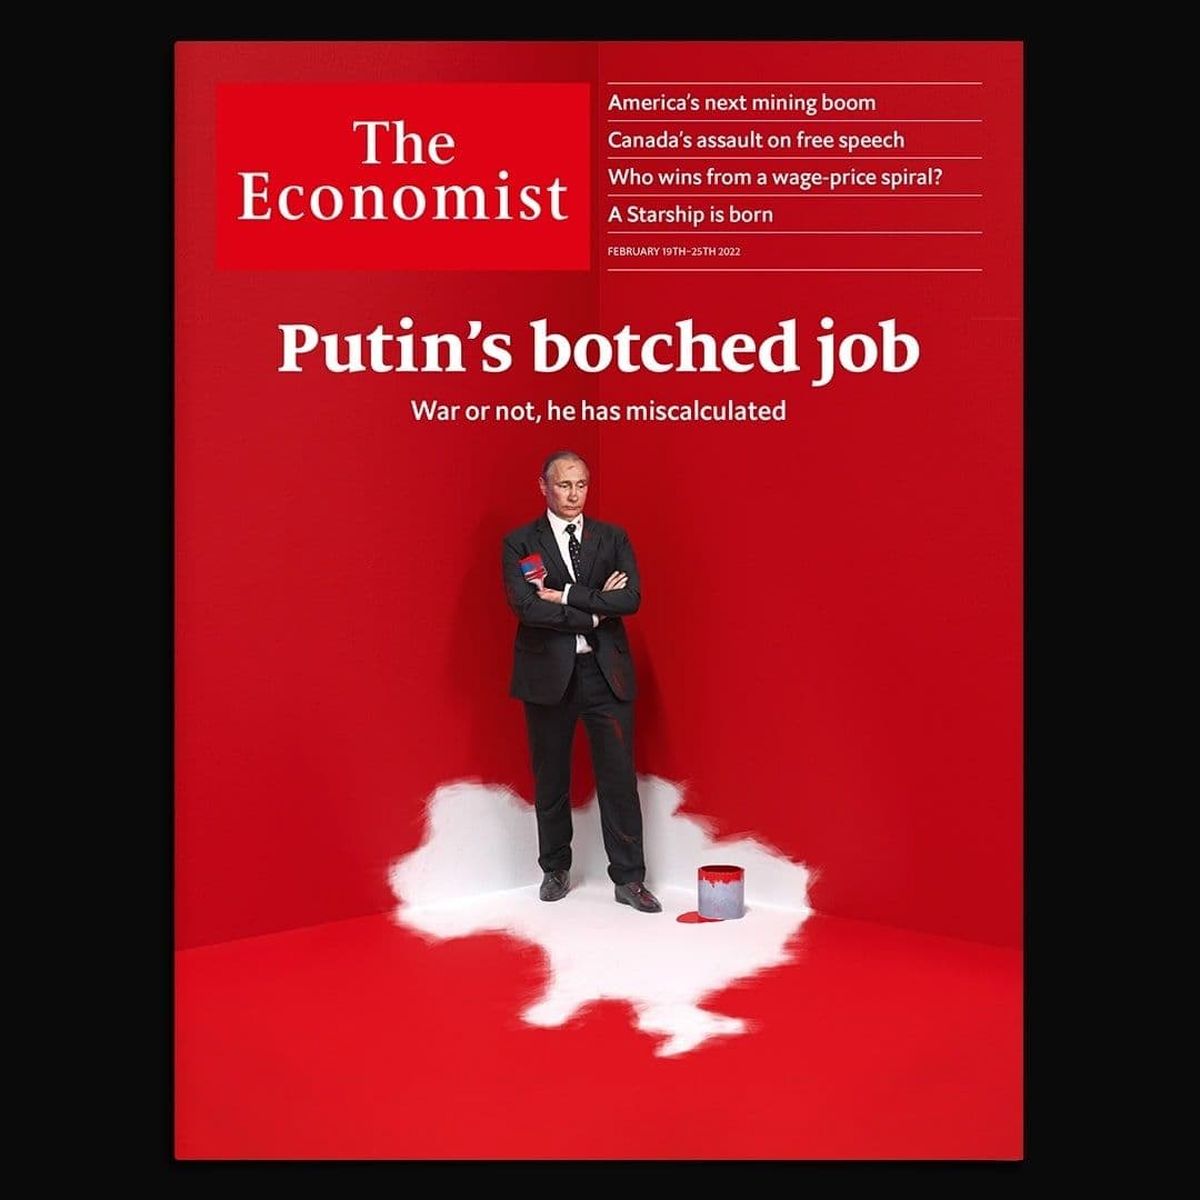 پوتین کارش را خراب کرد/ جلد هفته نامه اکونومیست در نقد آقای رئیس جمهور